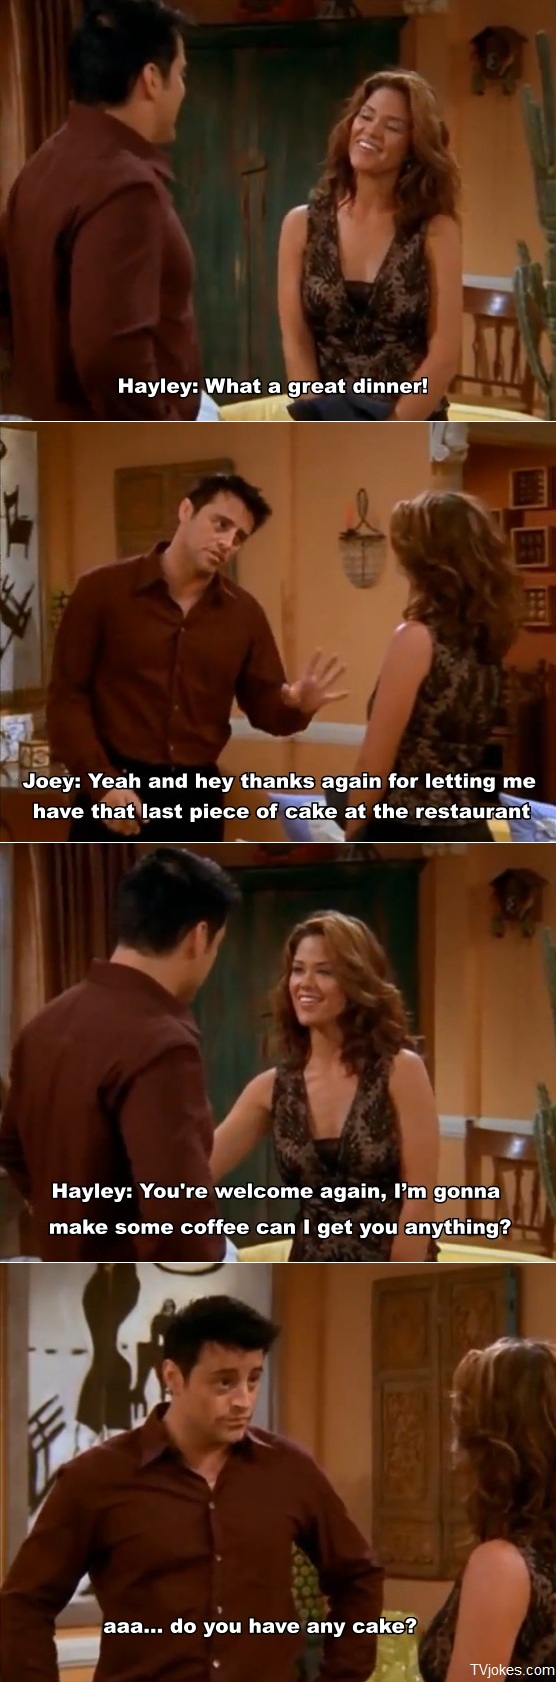 Joey loves cake